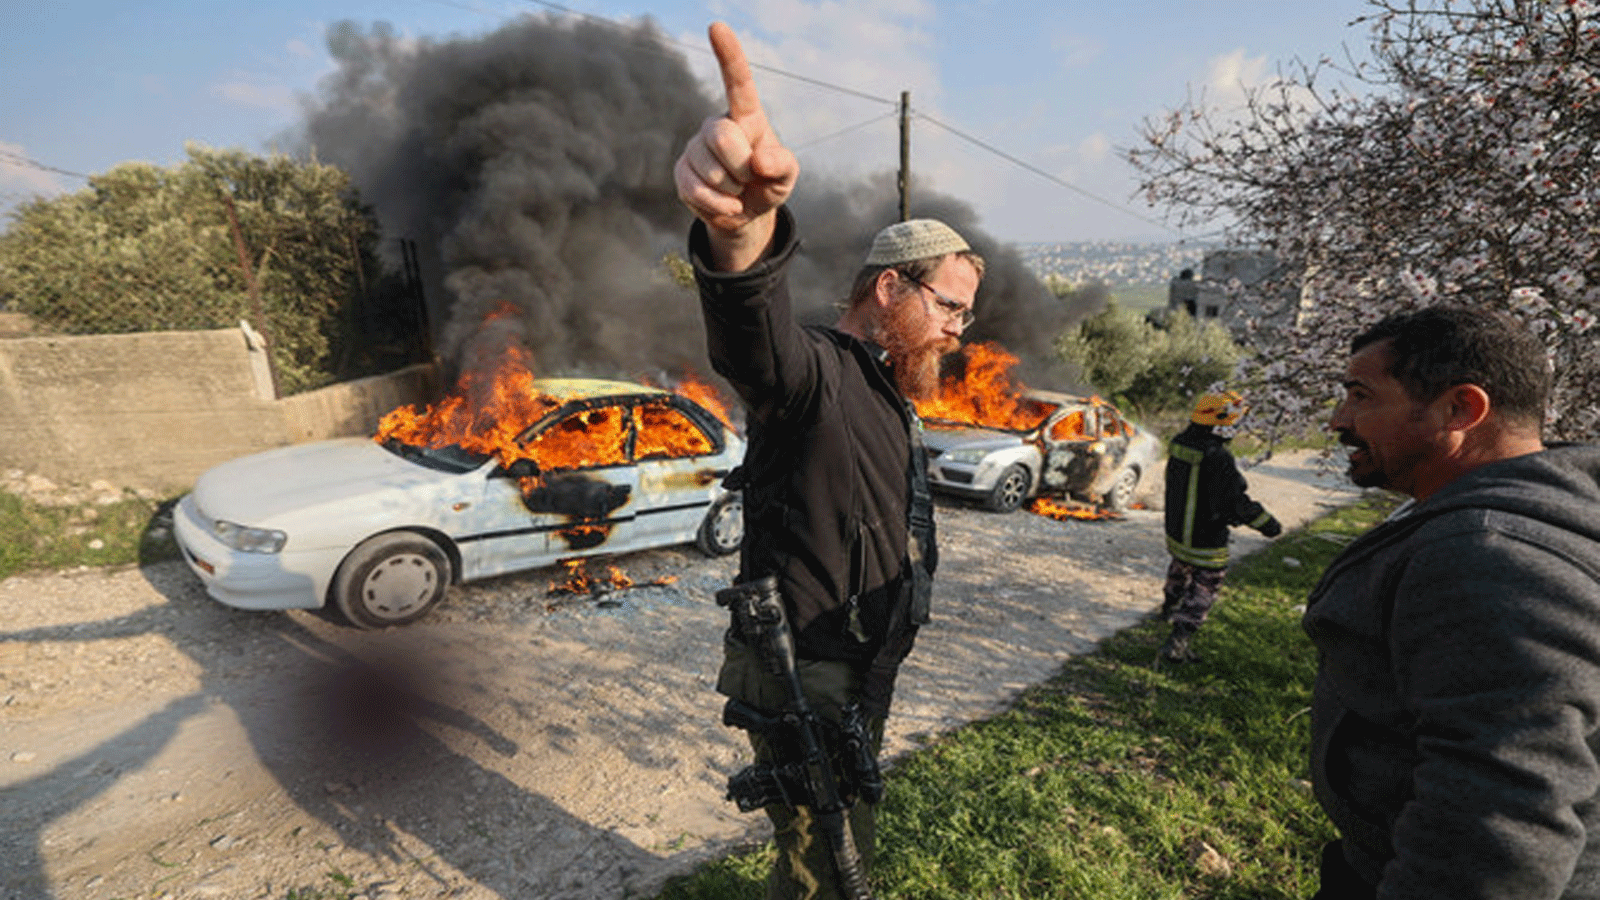 إسرائيليون مسلحون وسط اشتباكات بين مستوطنين وفلسطينيين في قرية بورين، بعد ورود أنباء عن قيام مستوطنين بإضرام النار في سيارات القرية. صورة التُقِطَت بتاريخ 25 شباط\ فبراير 2023